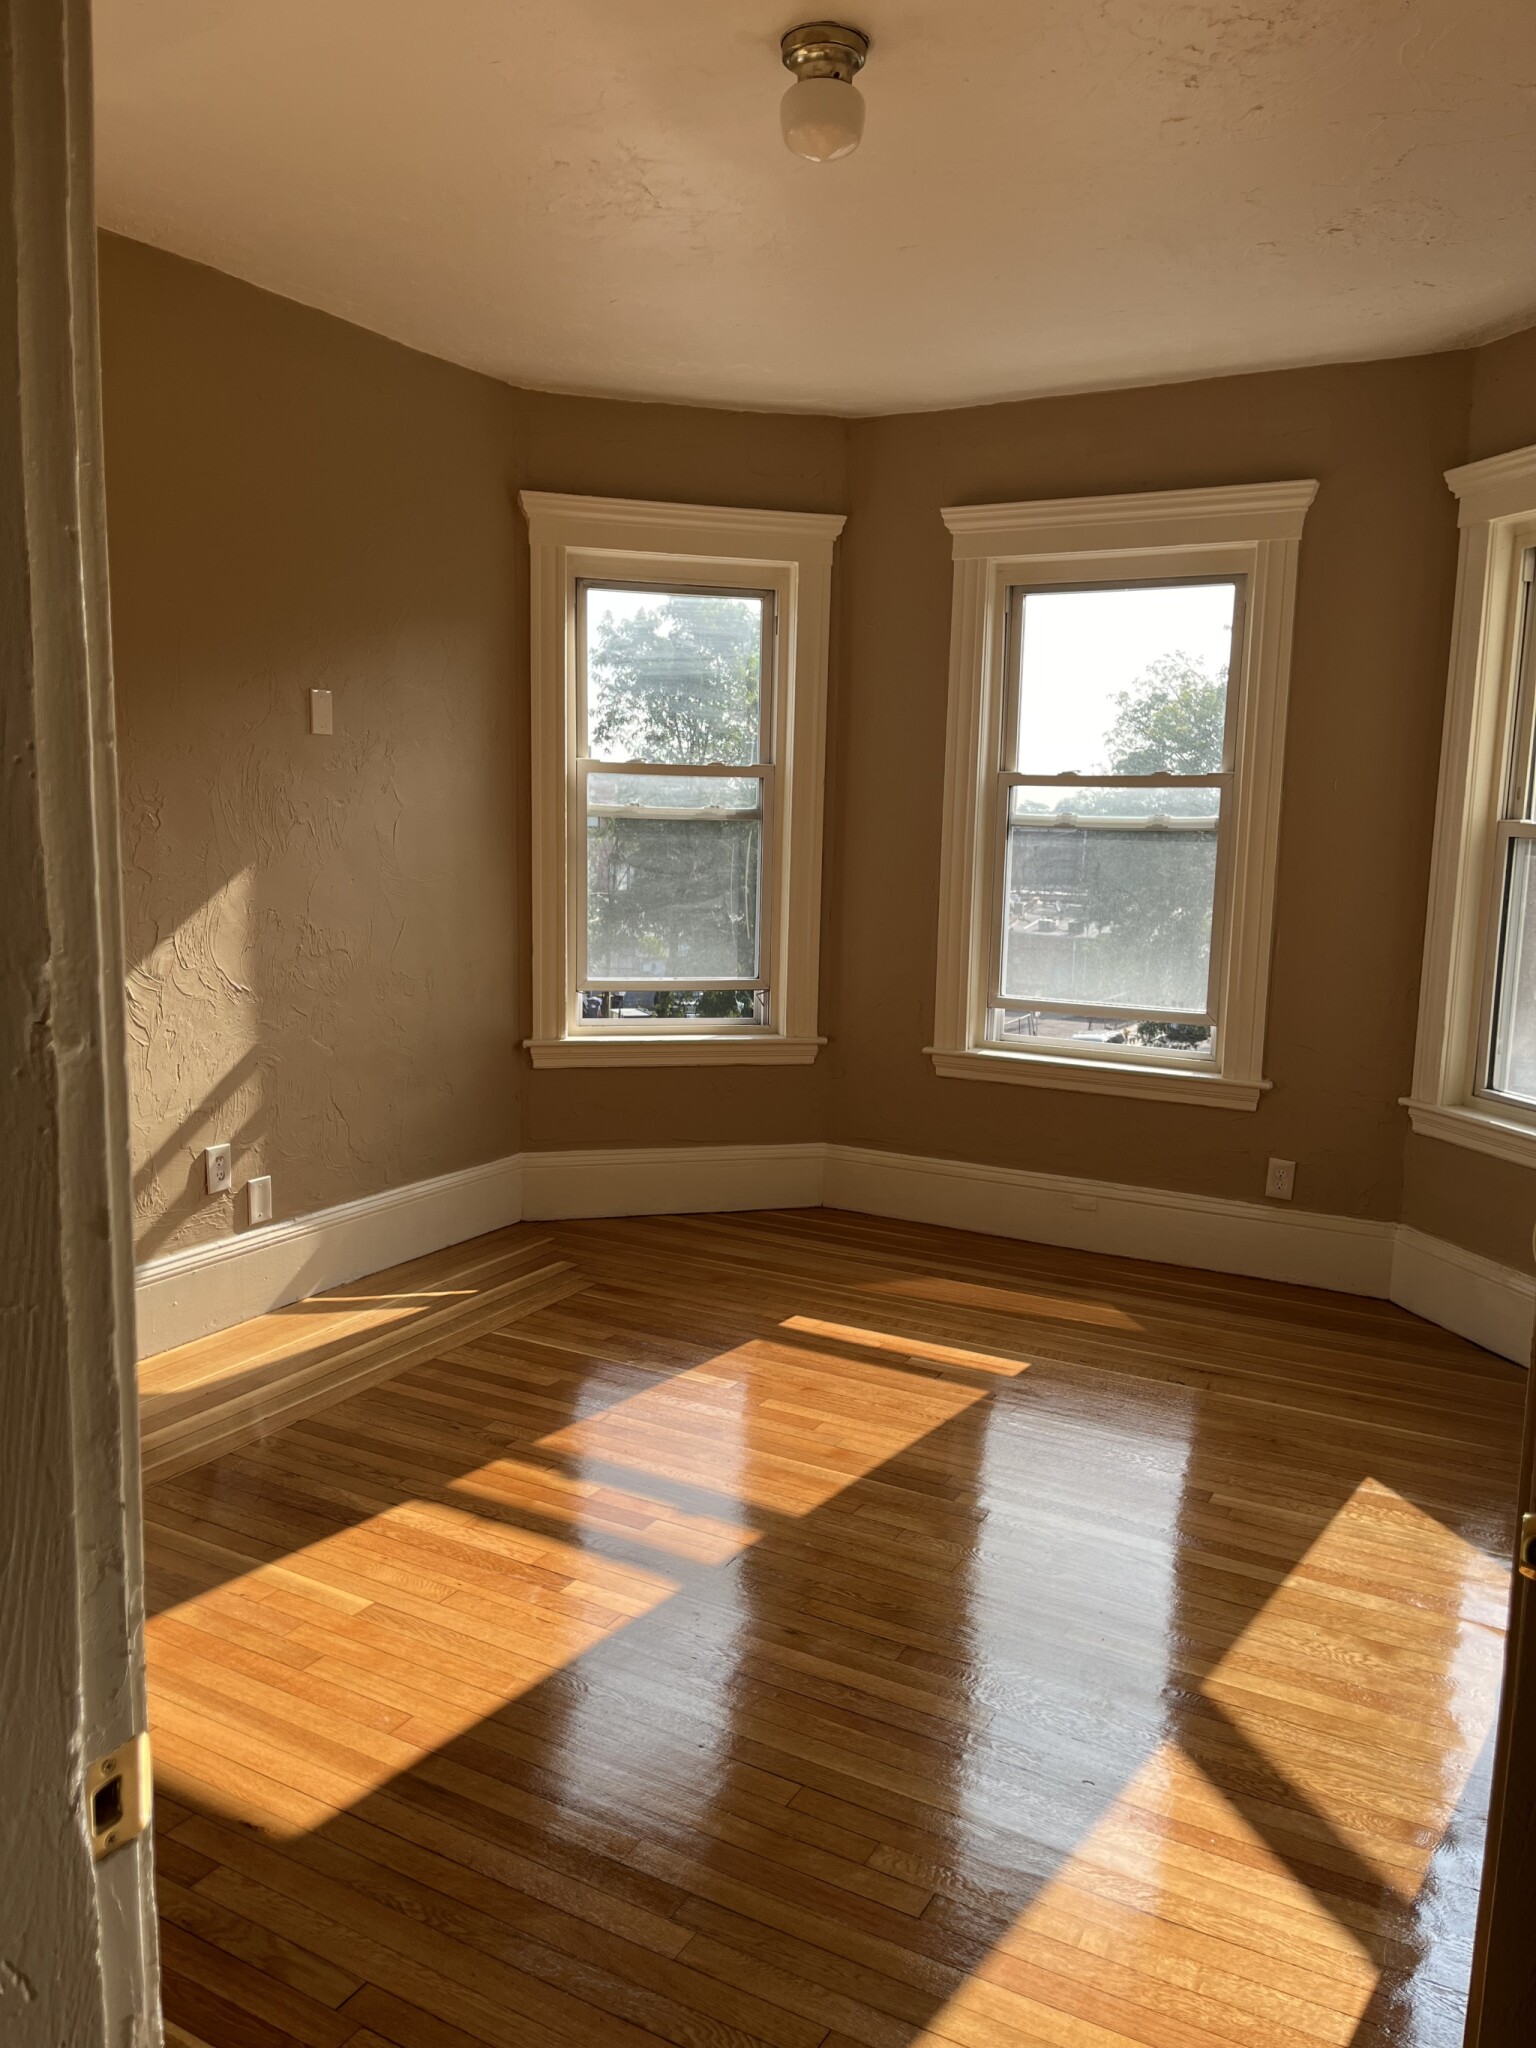 Photos of apartment on Seaver,Boston MA 02121